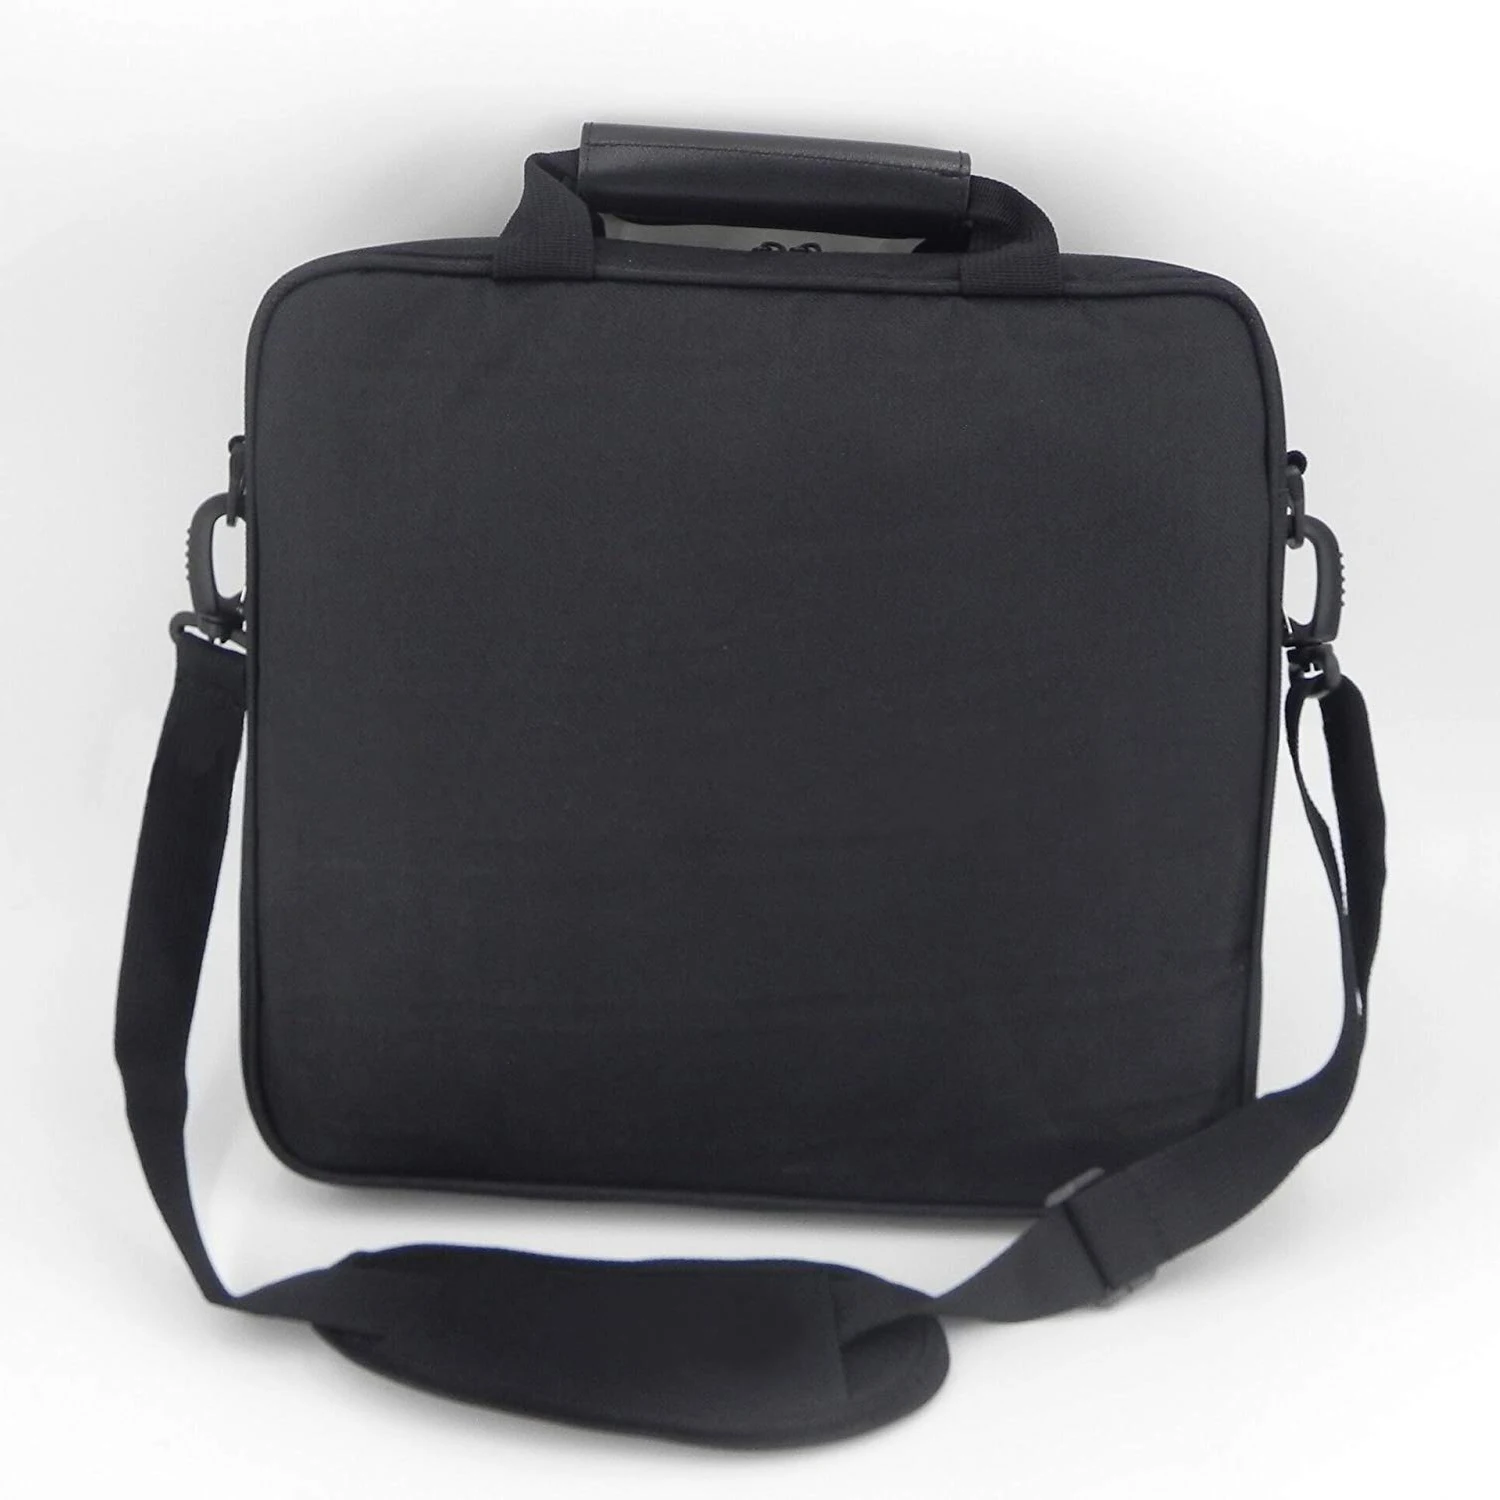 Чехол для переноски, прочная переносная нейлоновая тафта дорожная сумка через плечо сумка для консоли для PS4, PS4 Slim